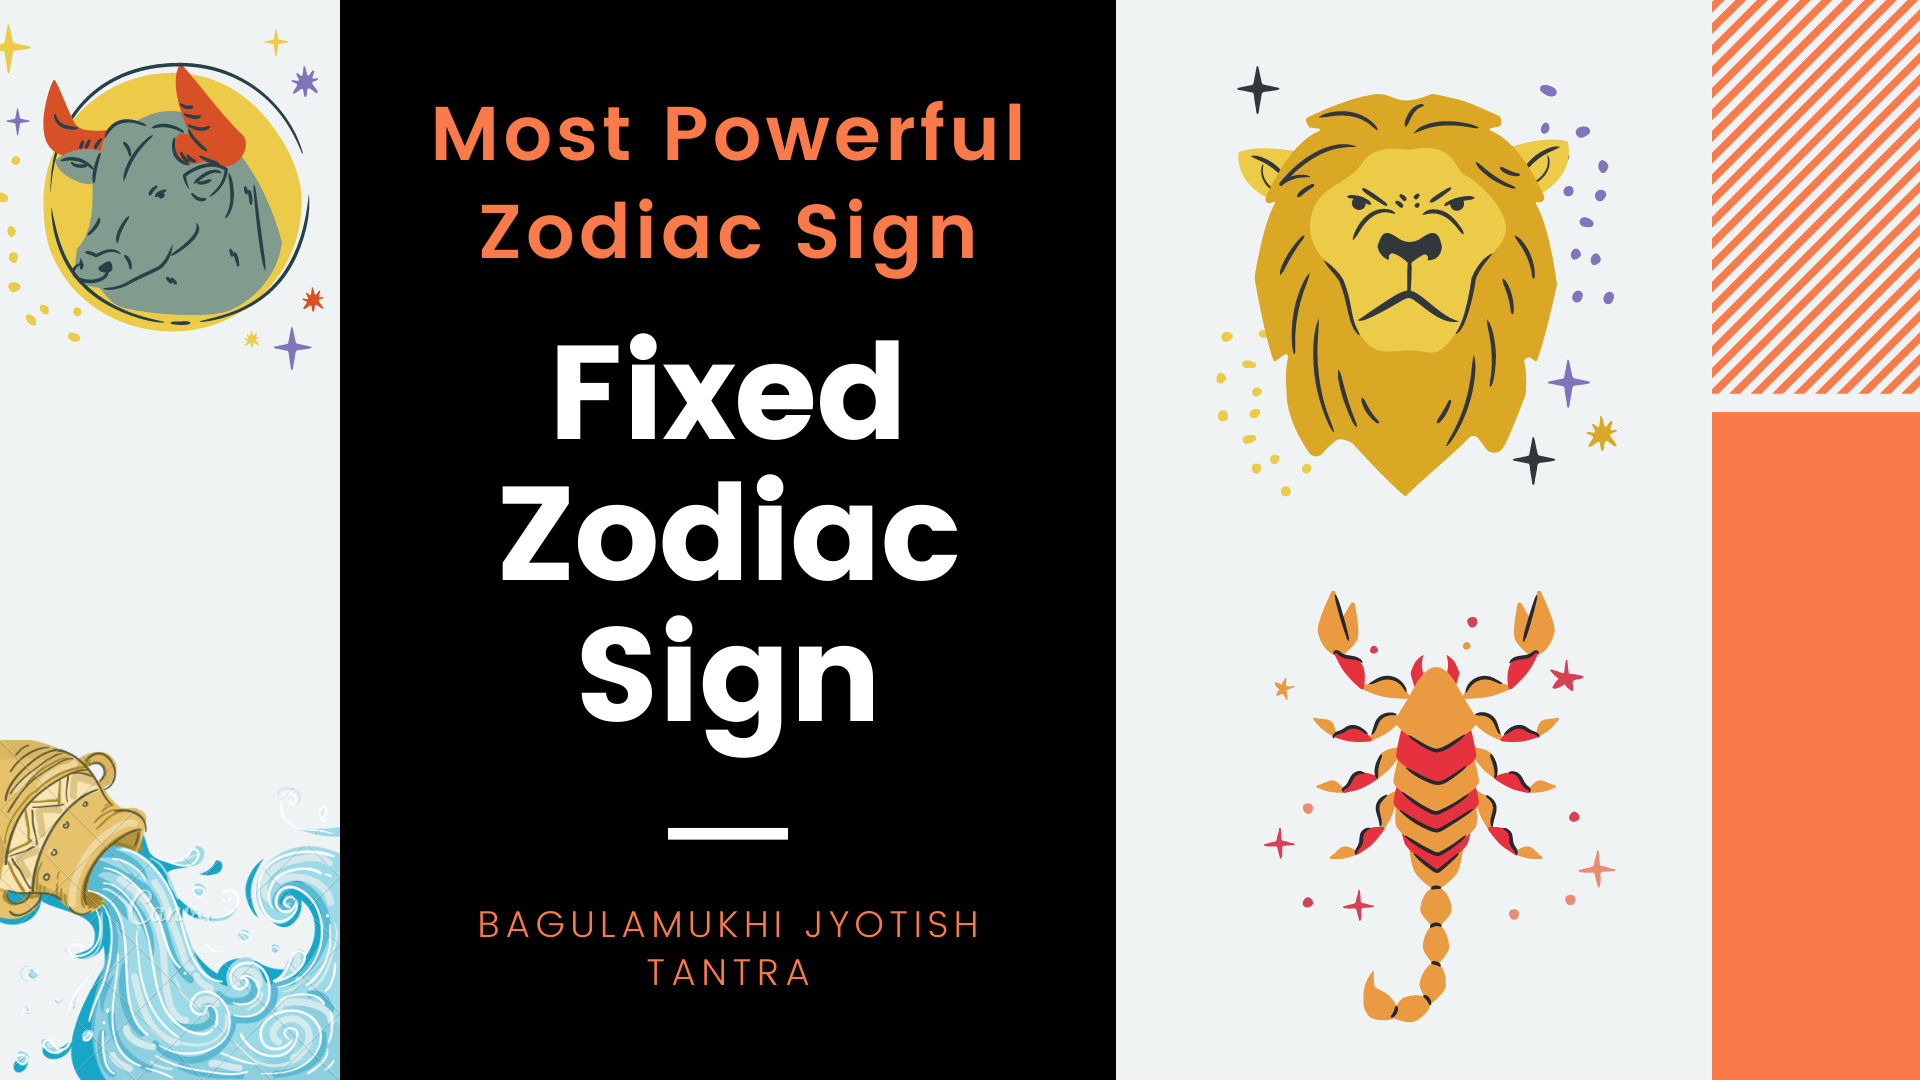 Fixed Zodiac Sign